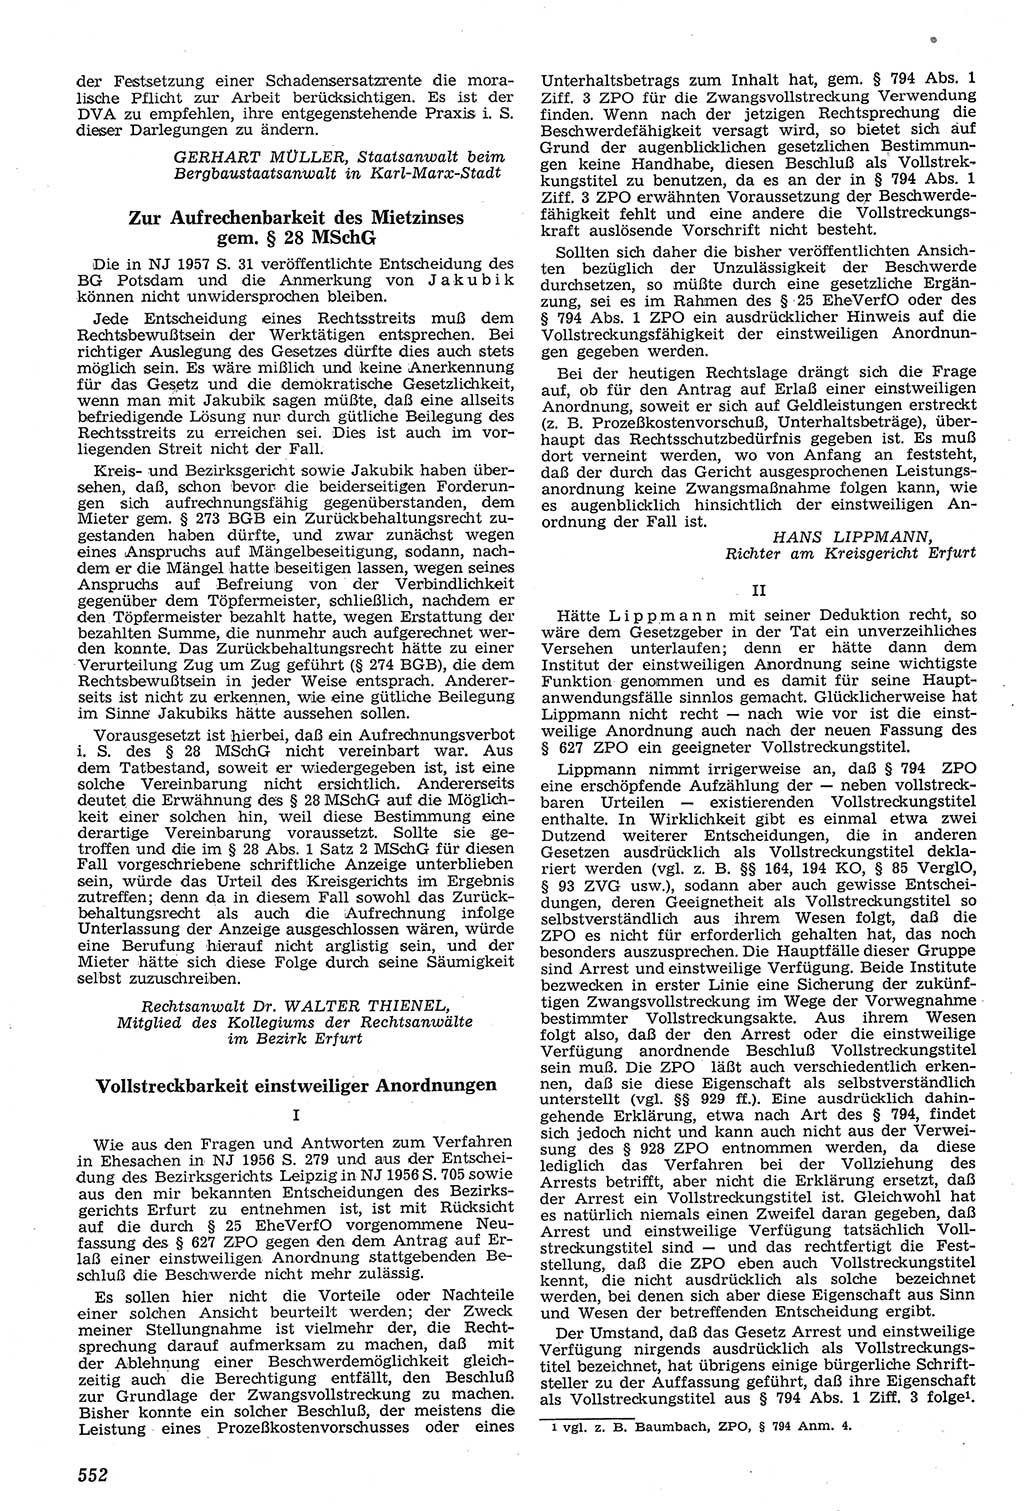 Neue Justiz (NJ), Zeitschrift für Recht und Rechtswissenschaft [Deutsche Demokratische Republik (DDR)], 11. Jahrgang 1957, Seite 552 (NJ DDR 1957, S. 552)